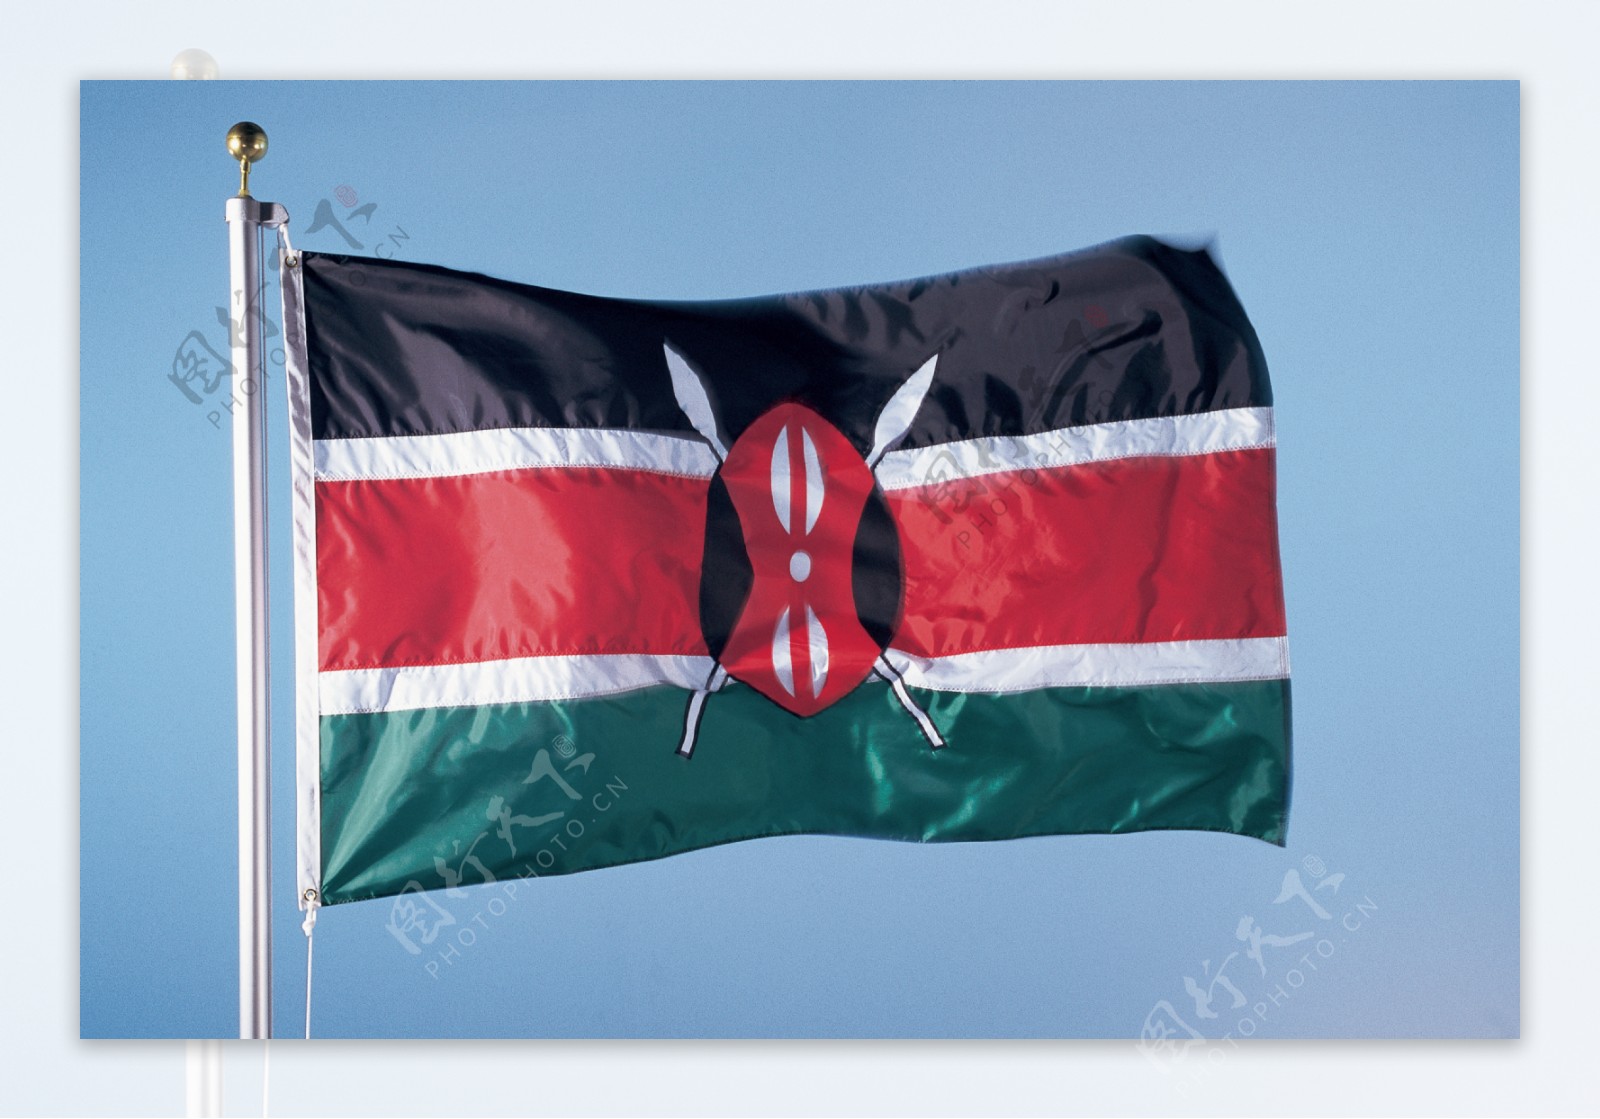 肯尼亚国旗图片